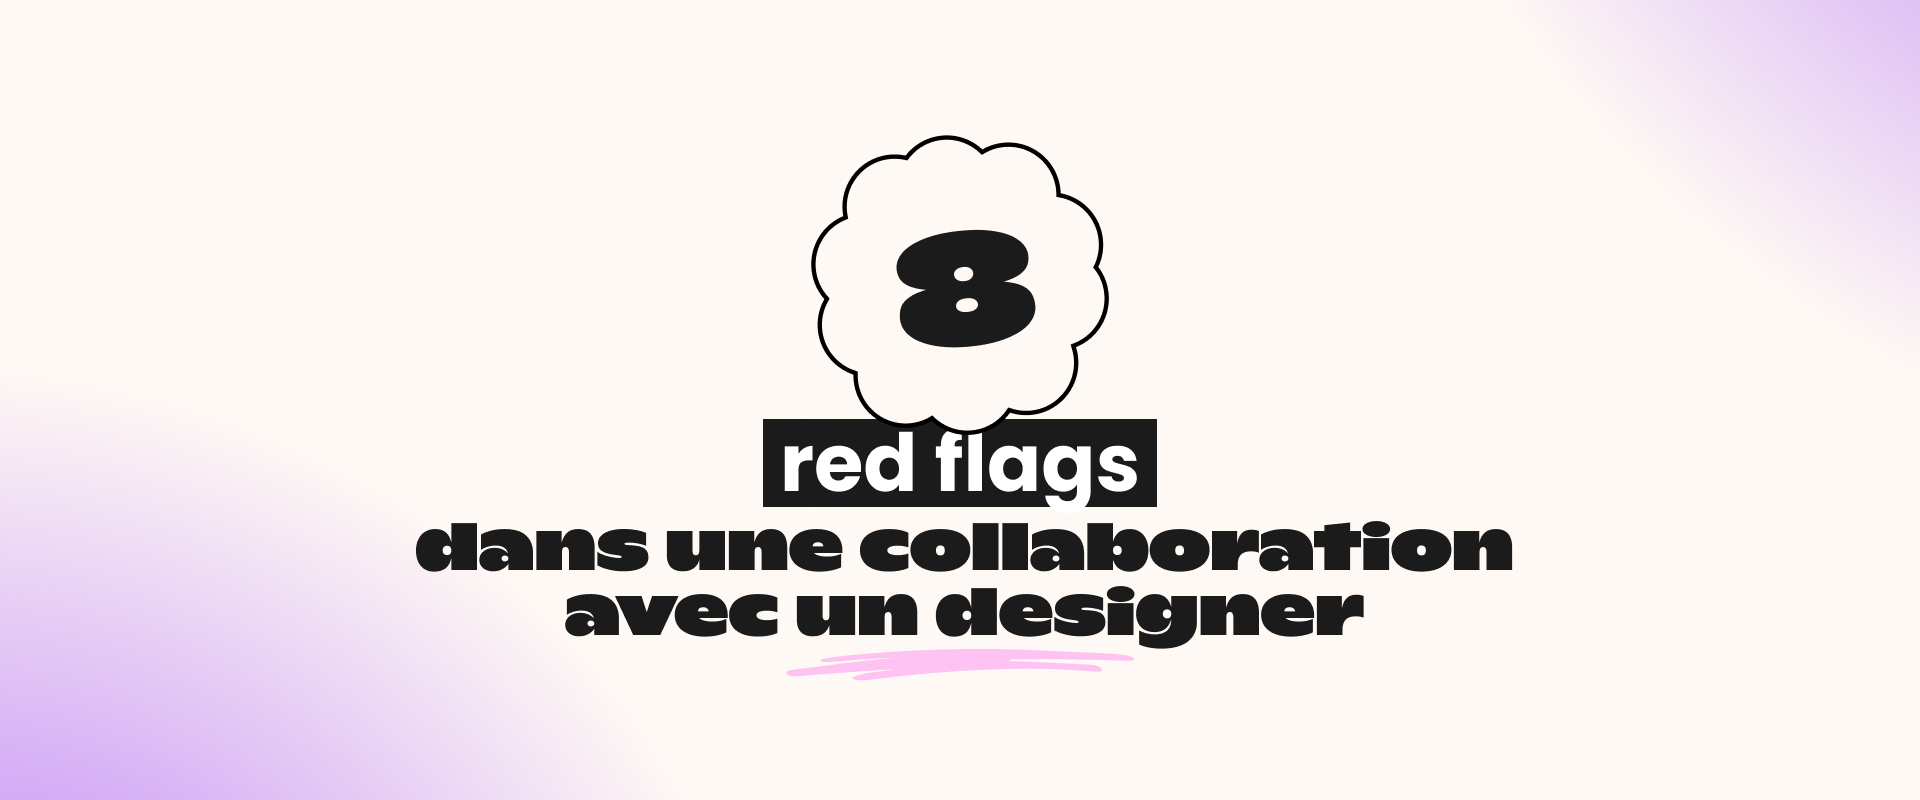 8 red flags dans une collaboration avec un designer<br />
